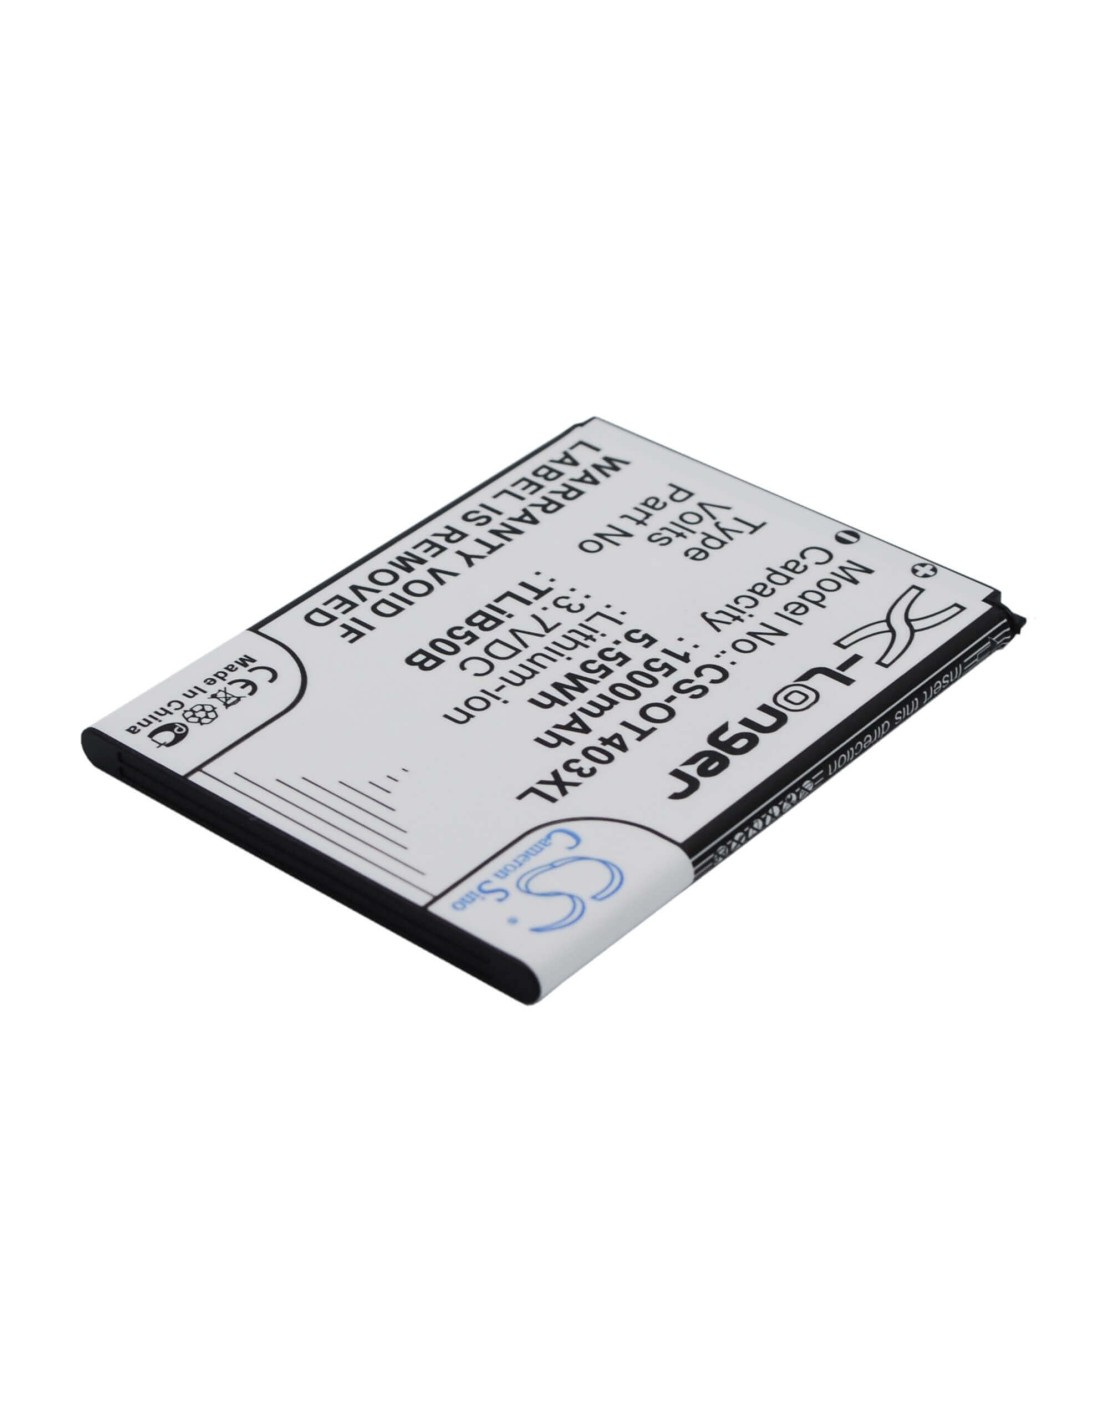 Battery for Alcatel OT-4030, OT4030D, OT-4030X 3.7V, 1500mAh - 5.55Wh